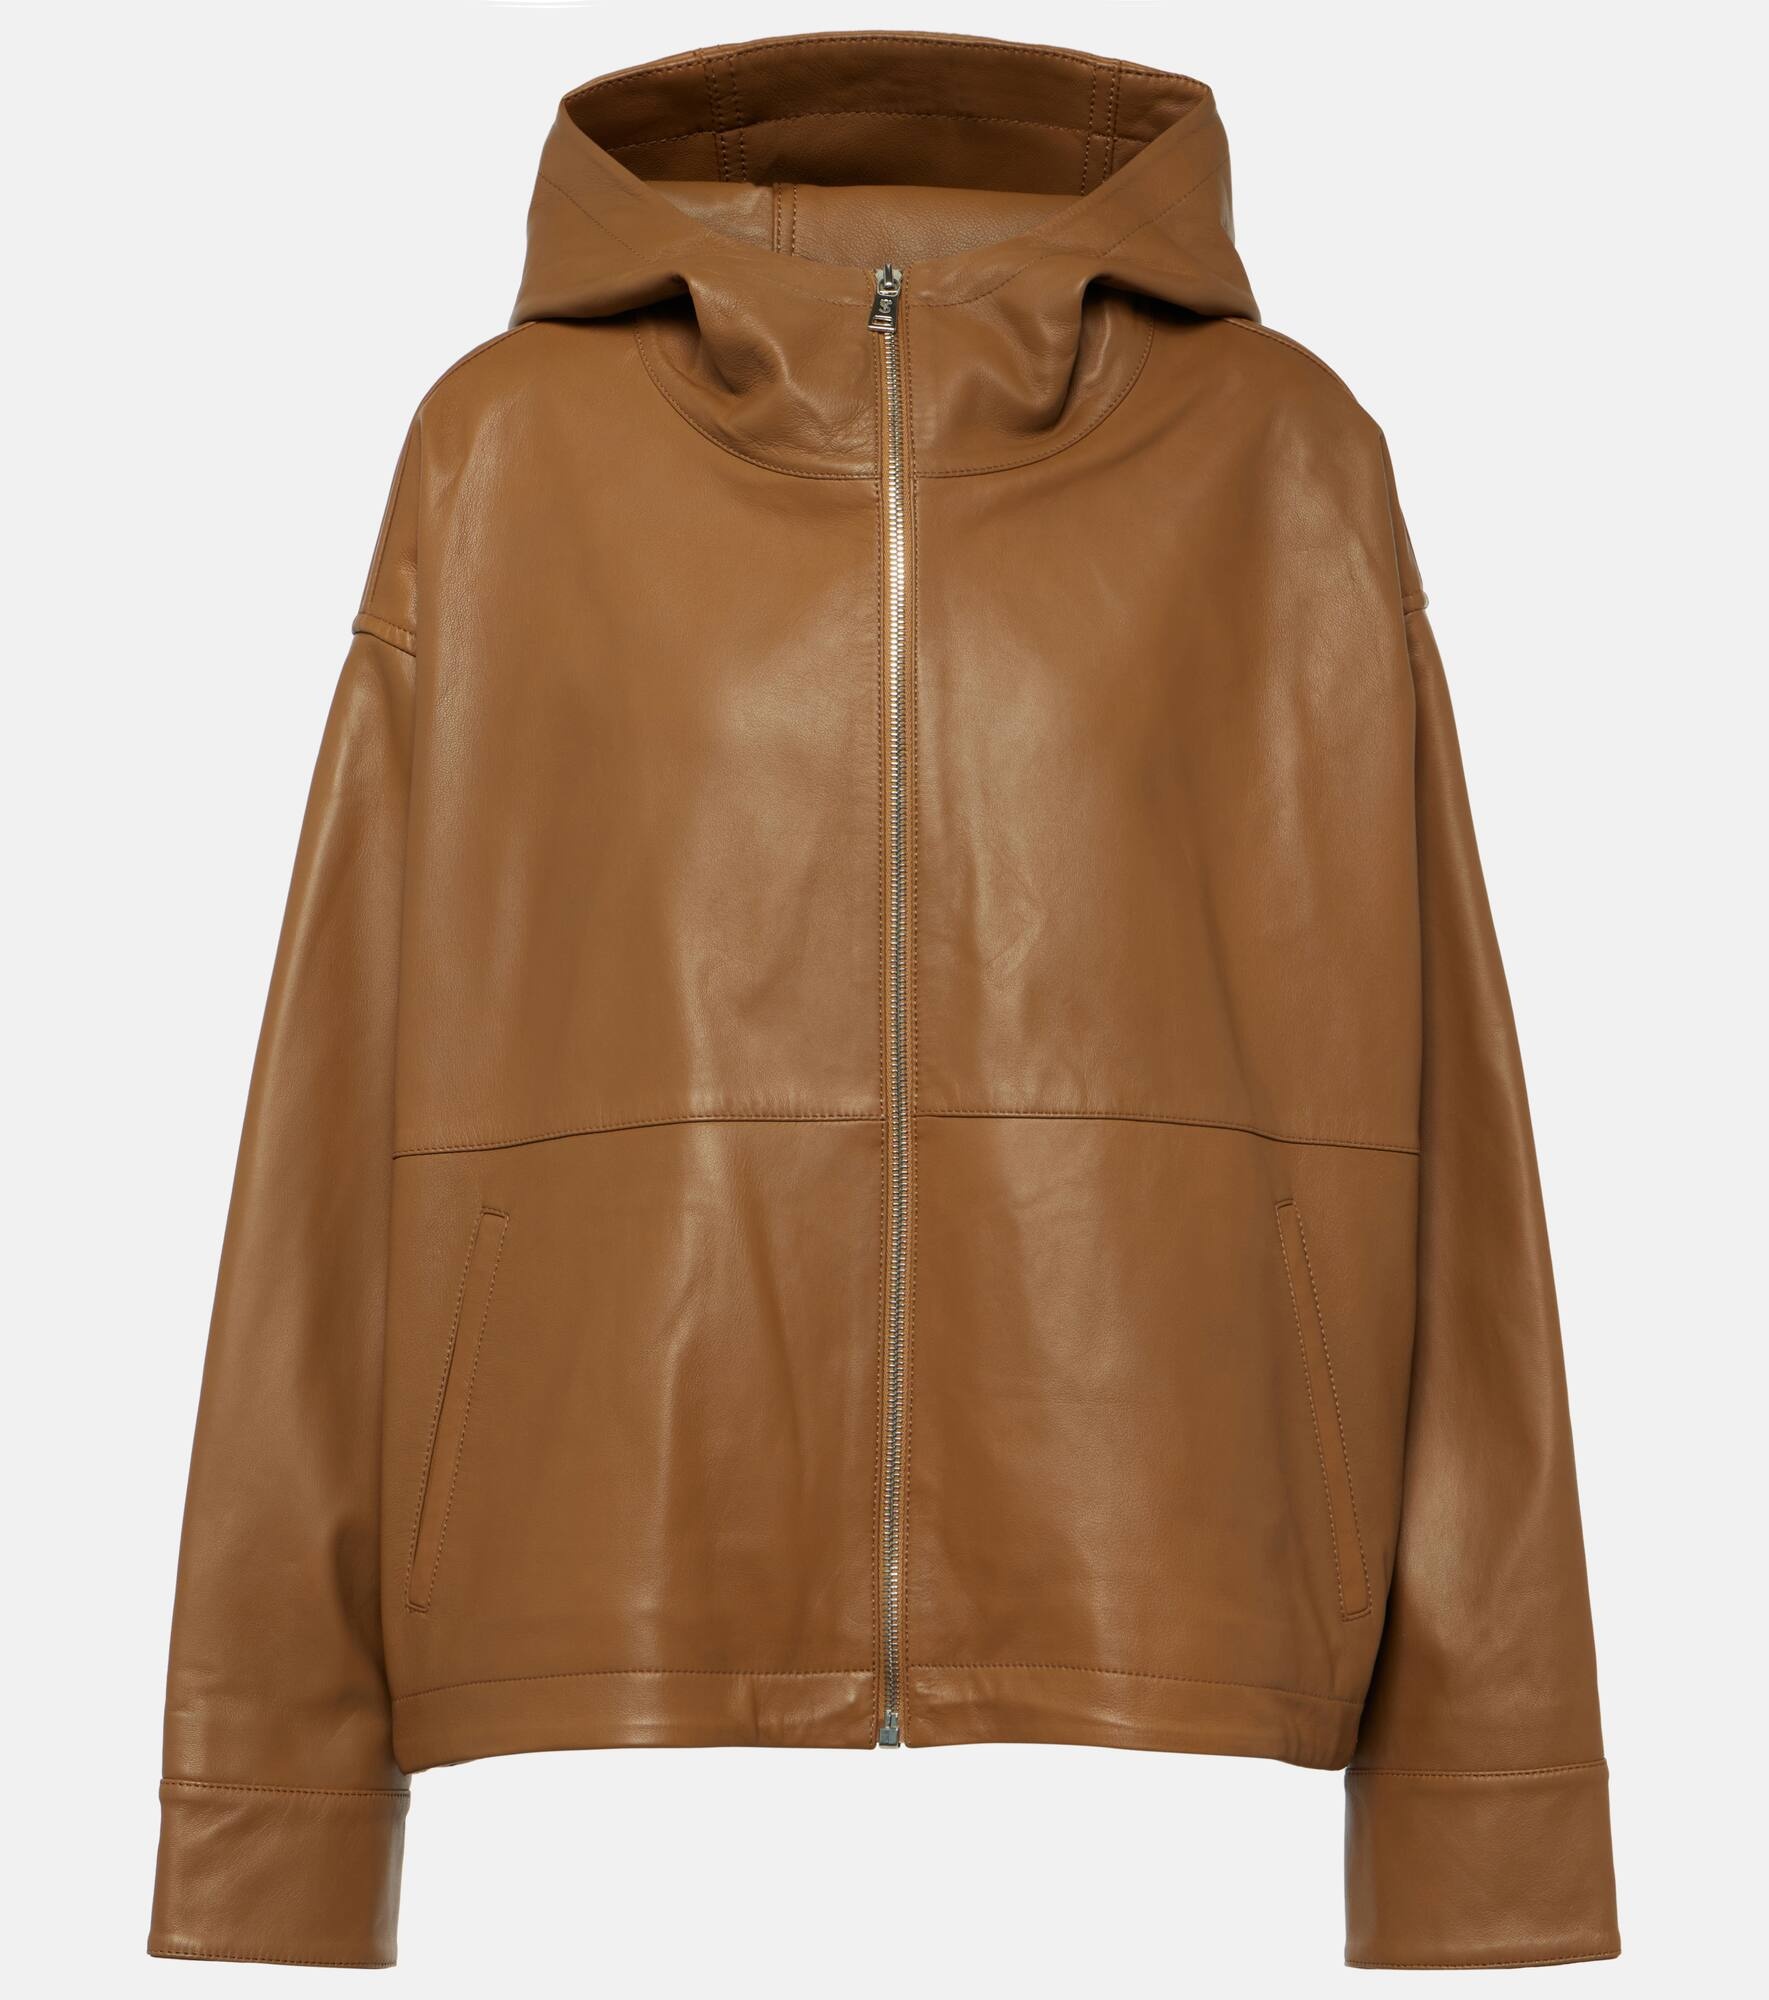 Leather jacket - 1